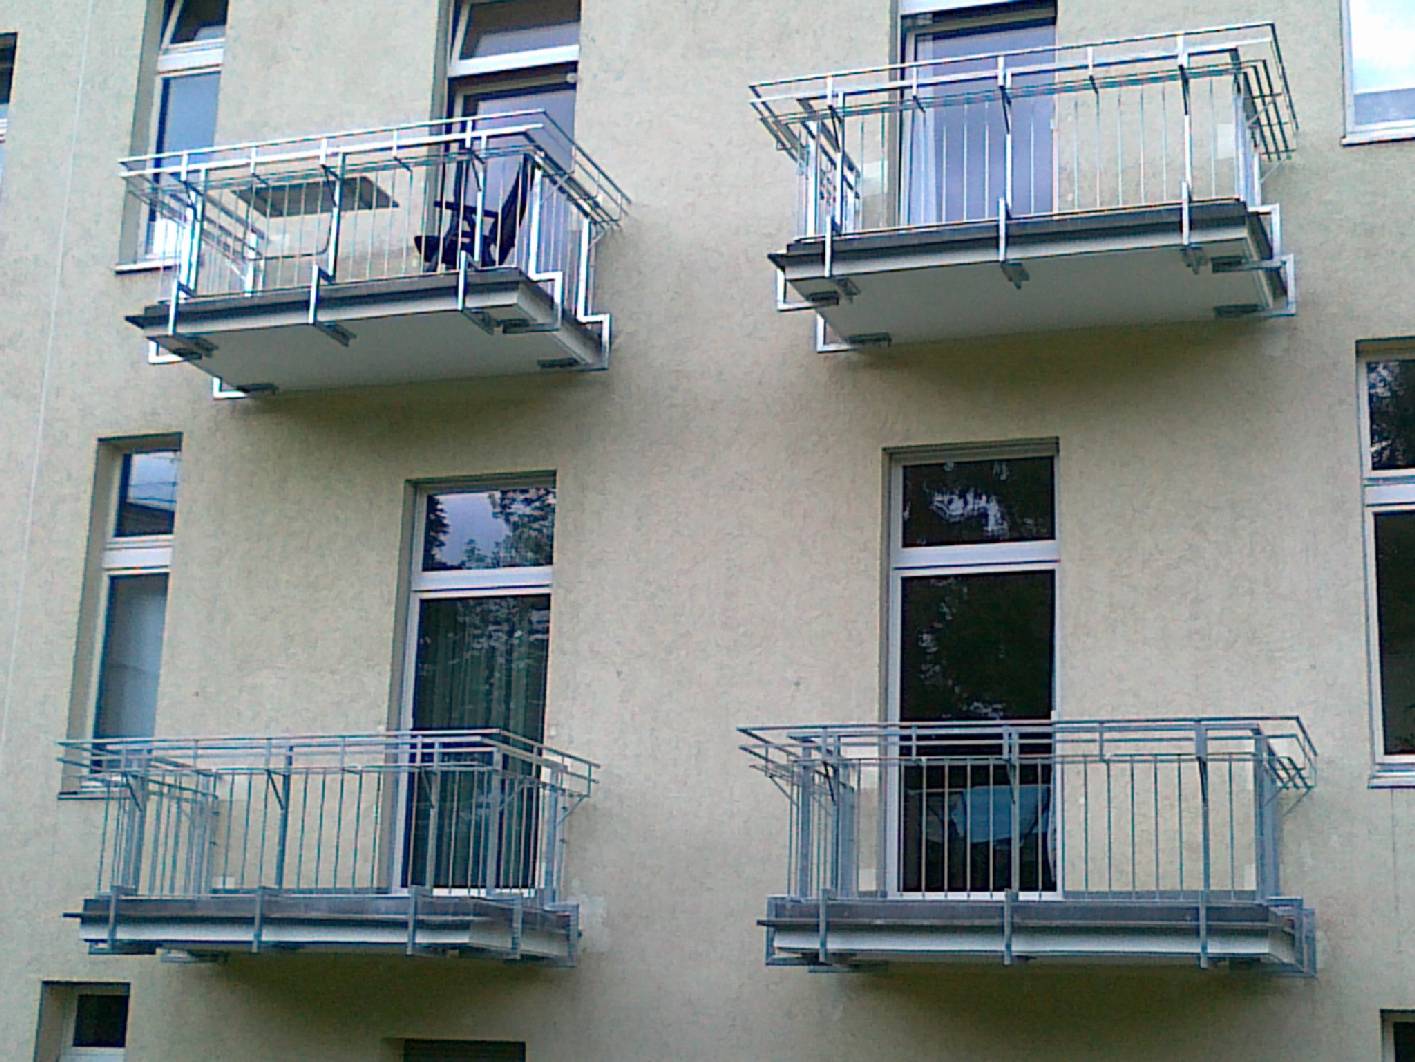 Suchen Sie einen Fachmann für Balkonsanierungen und Balkonabdichtungen in Berlin? Dann sind Sie hier, beim Fugendoktor genau richtig!